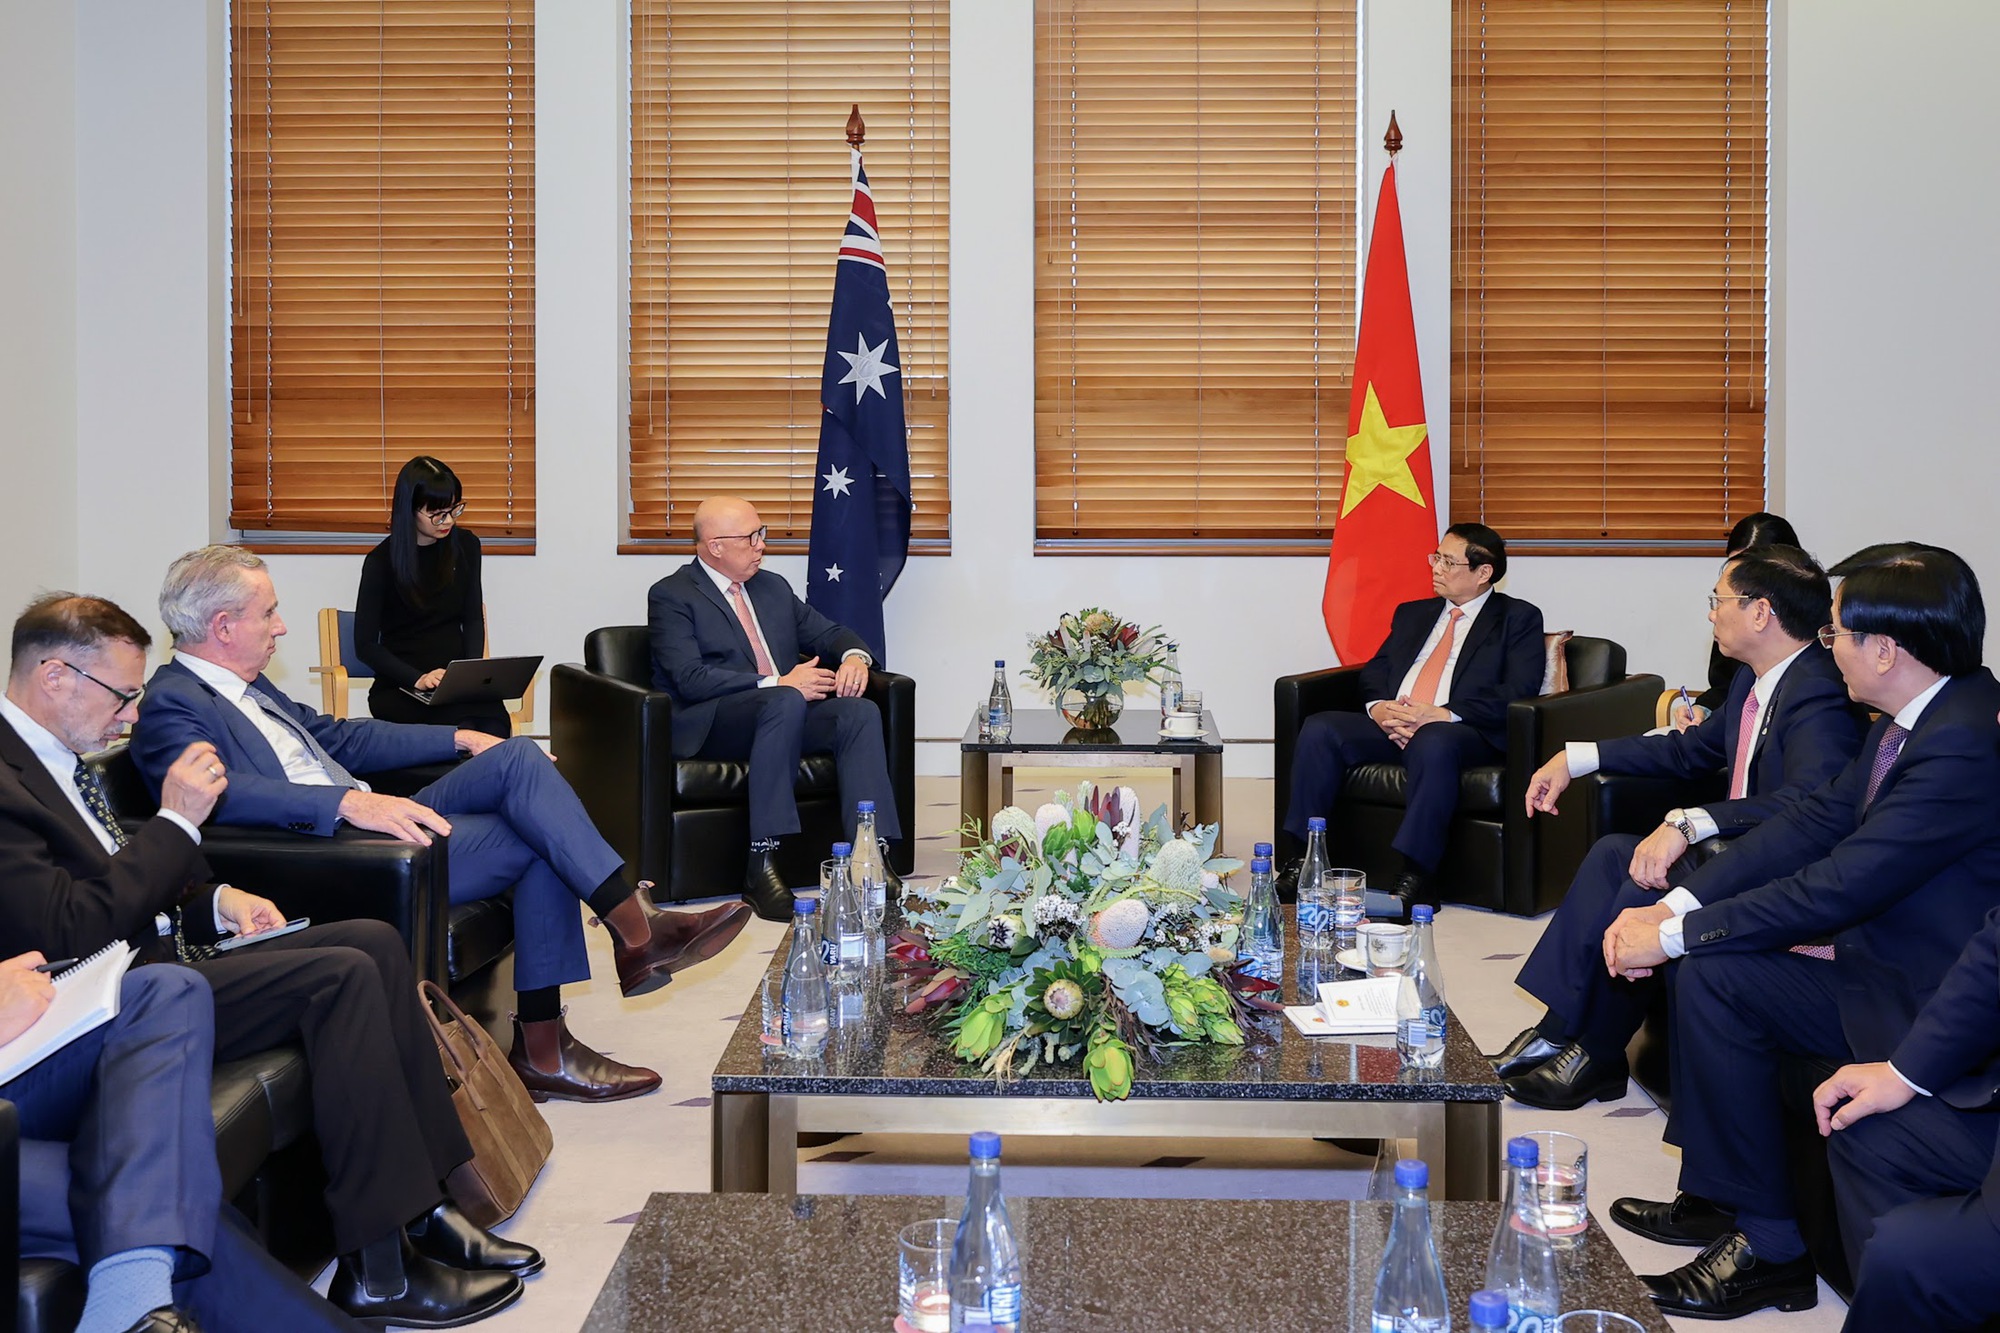 Lãnh đạo Đảng Tự do Peter Dutton khẳng định, Australia coi trọng quan hệ với Việt Nam, coi Việt Nam là một trong những đối tác quan trọng ở khu vực châu Á-Thái Bình Dương, cho dù đảng nào tại Australia nắm quyền - Ảnh: VGP/Nhật Bắc